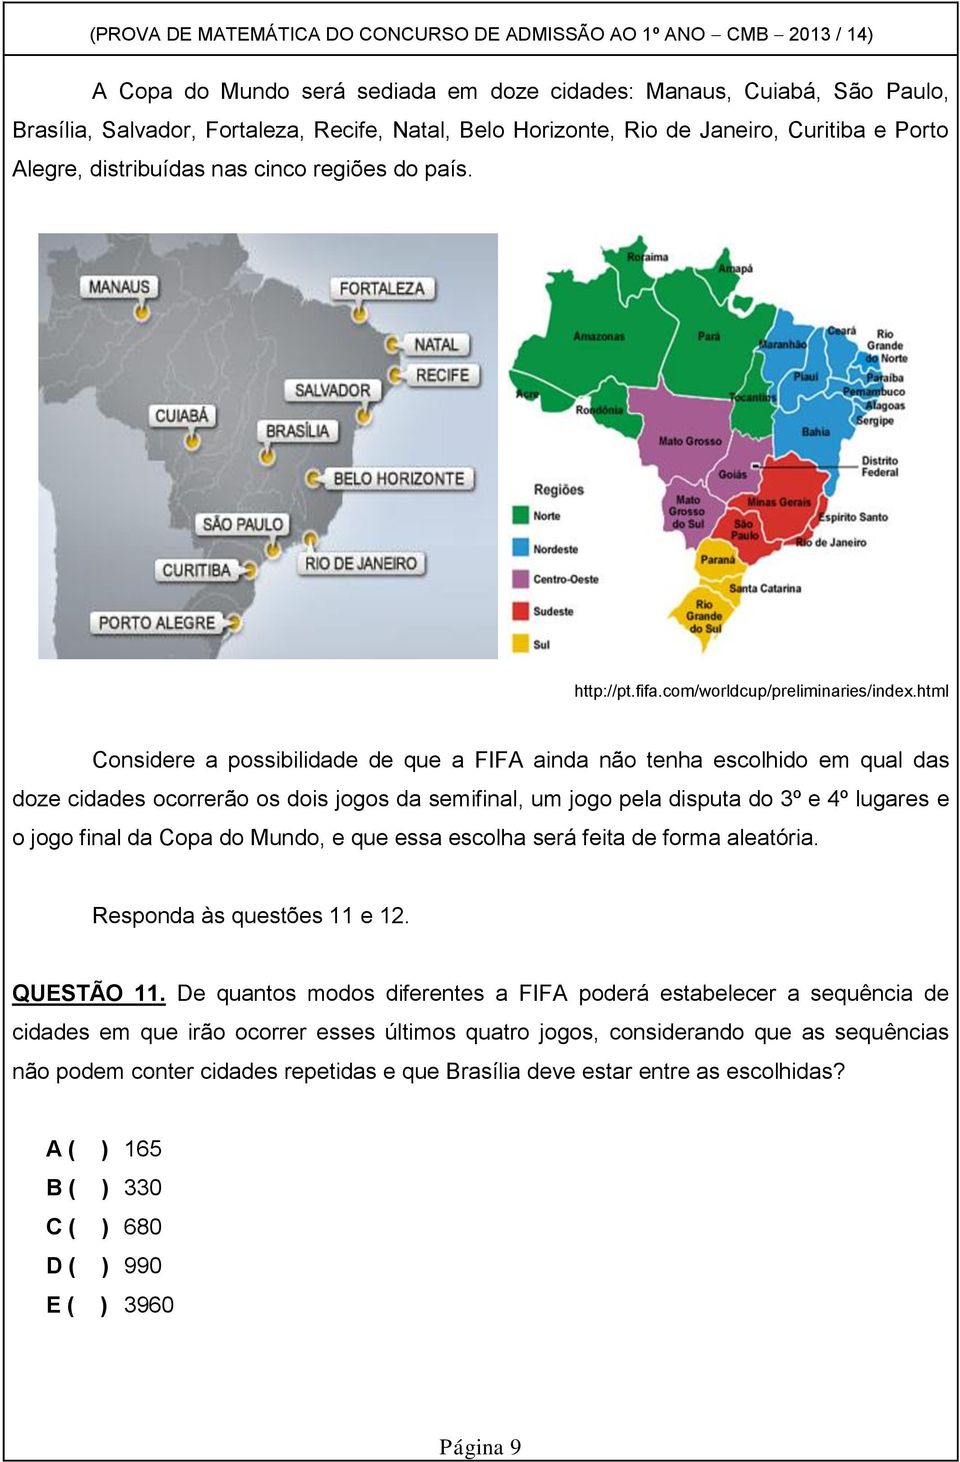 html Considere a possibilidade de que a FIFA ainda não tenha escolhido em qual das doze cidades ocorrerão os dois jogos da semifinal, um jogo pela disputa do 3º e 4º lugares e o jogo final da Copa do